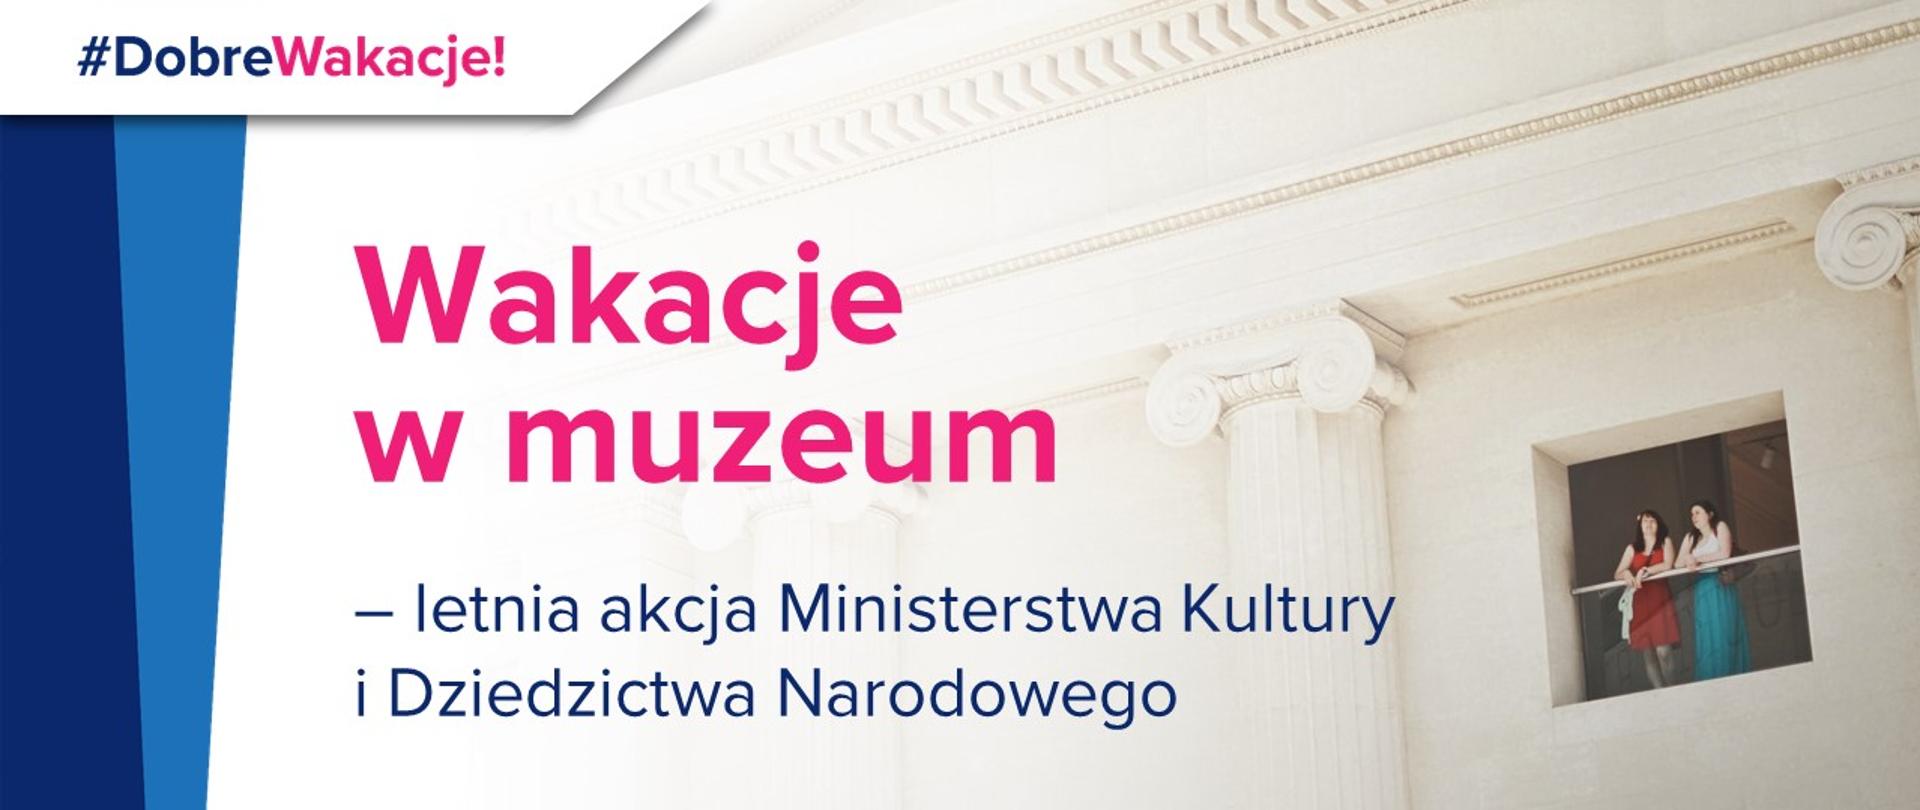 Grafika informująca o "Wakacjach w muzeum" – letniej akcji Ministerstwa Kultury i Dziedzictwa Narodowego